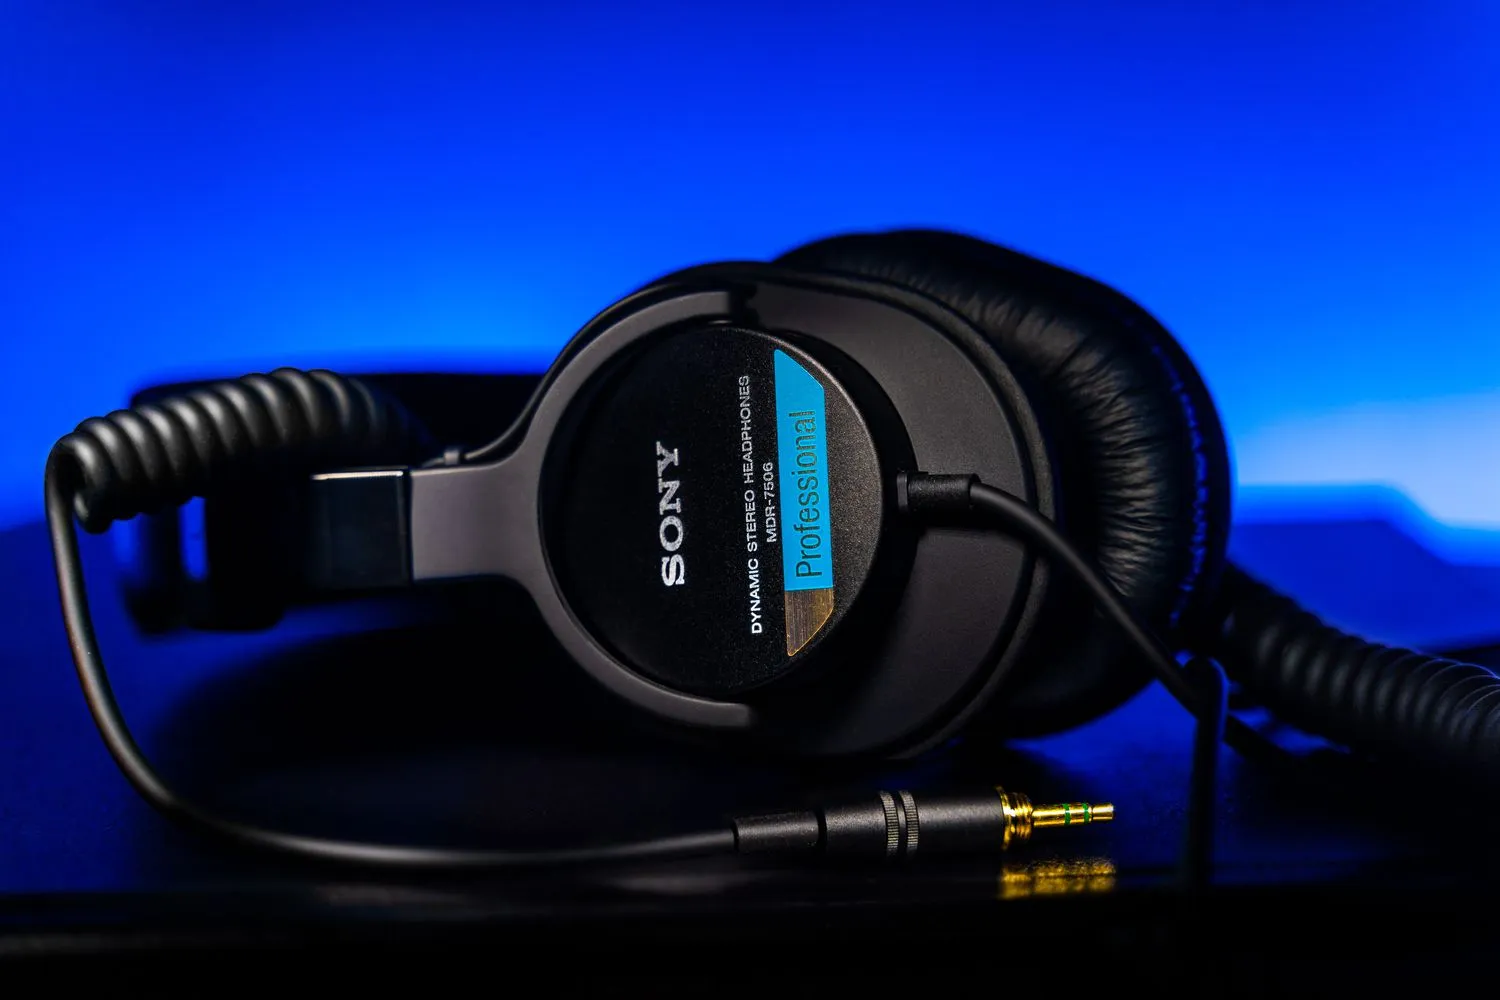 Tai Nghe Sony MDR-7506 cùng với đầu cắm mạ vàng